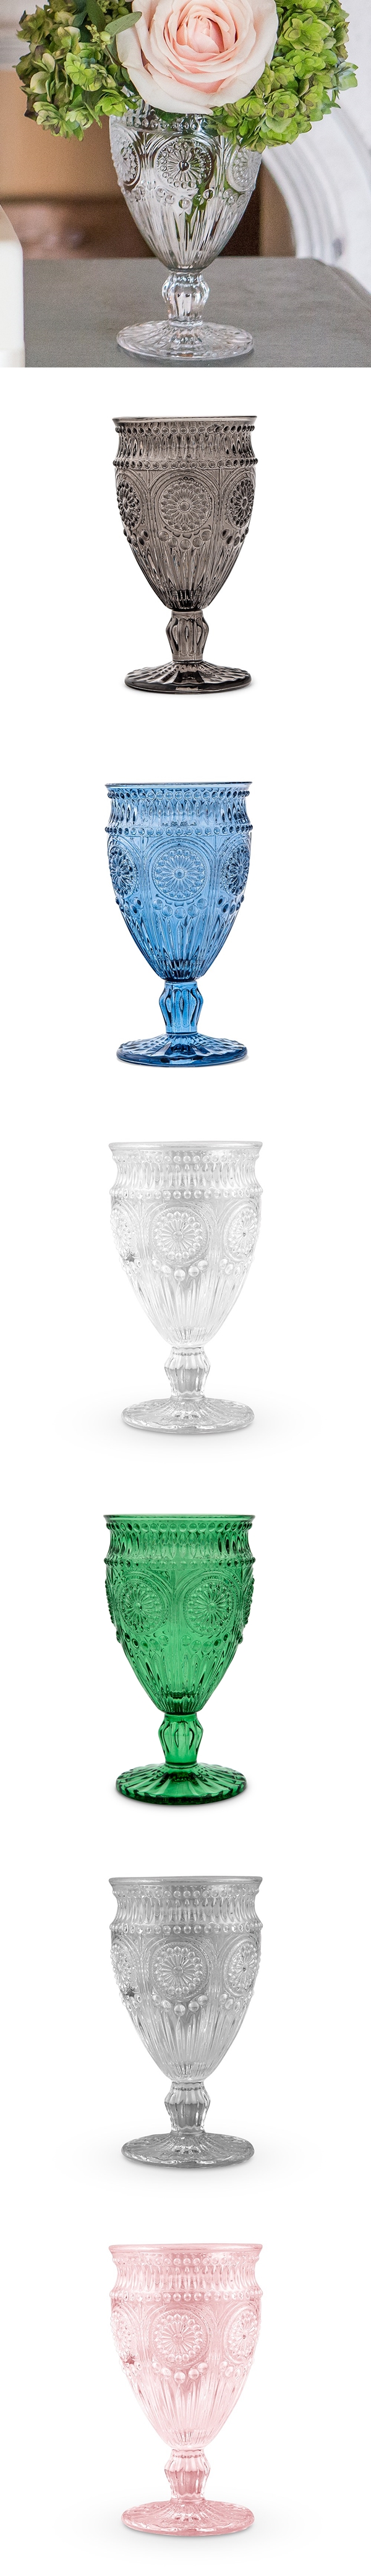 Weddingstar Vintage Inspired Pressed Glass Goblet Clear